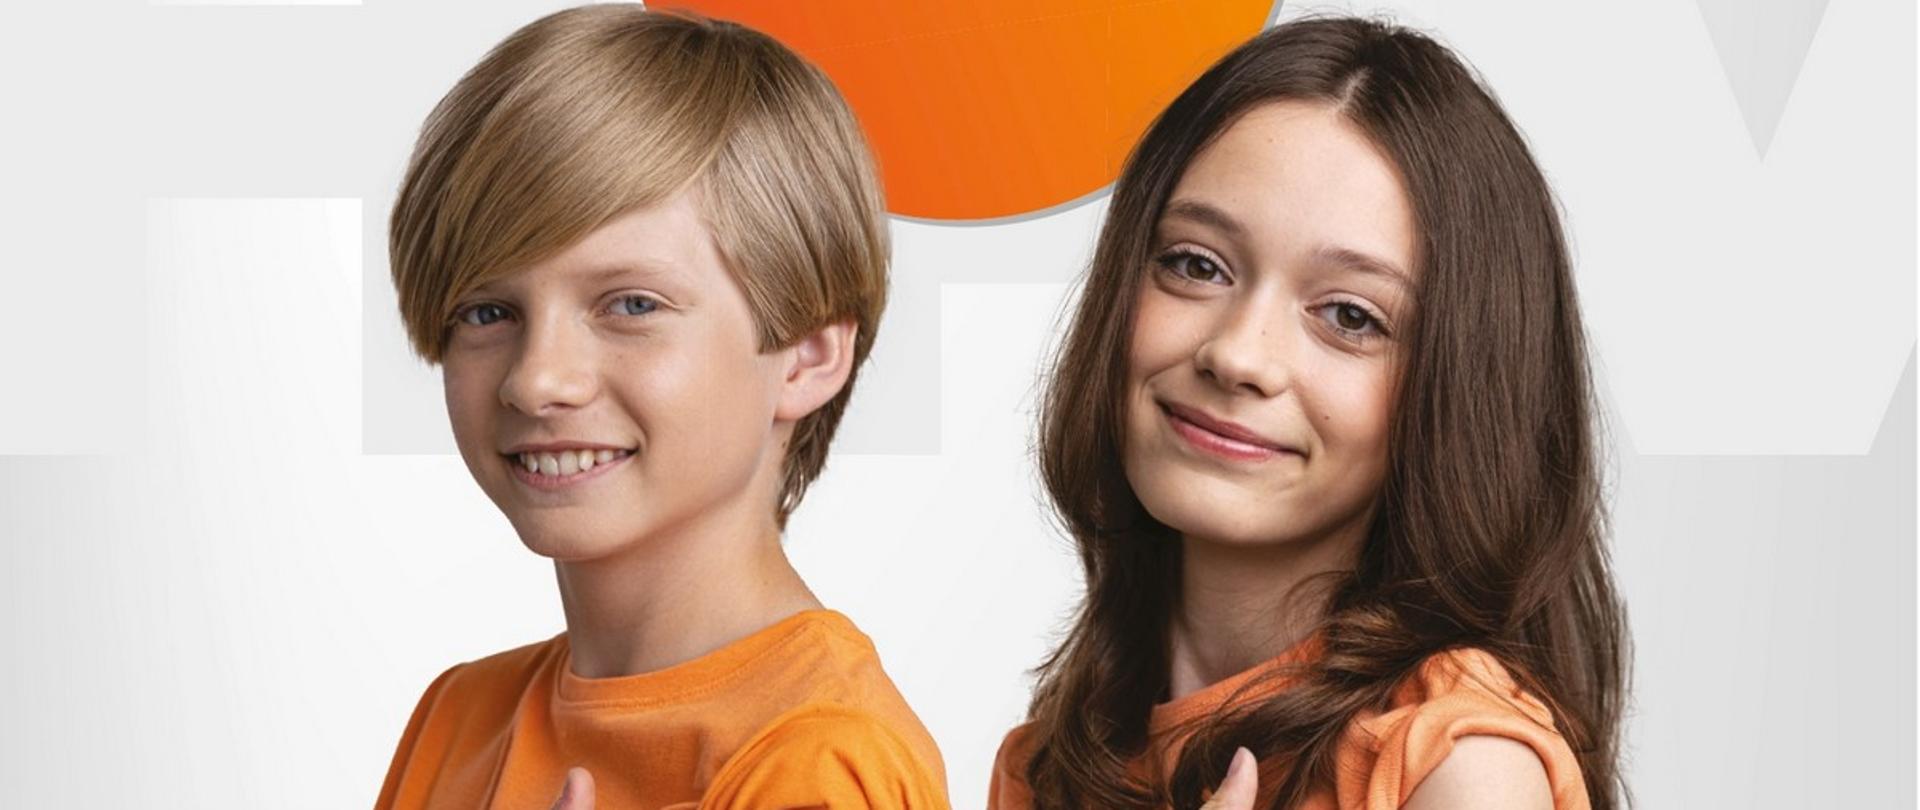 Zdjęcie przedstawiające dwójkę dzieci: chłopca i dziewczynkę w pomarańczowych koszulkach